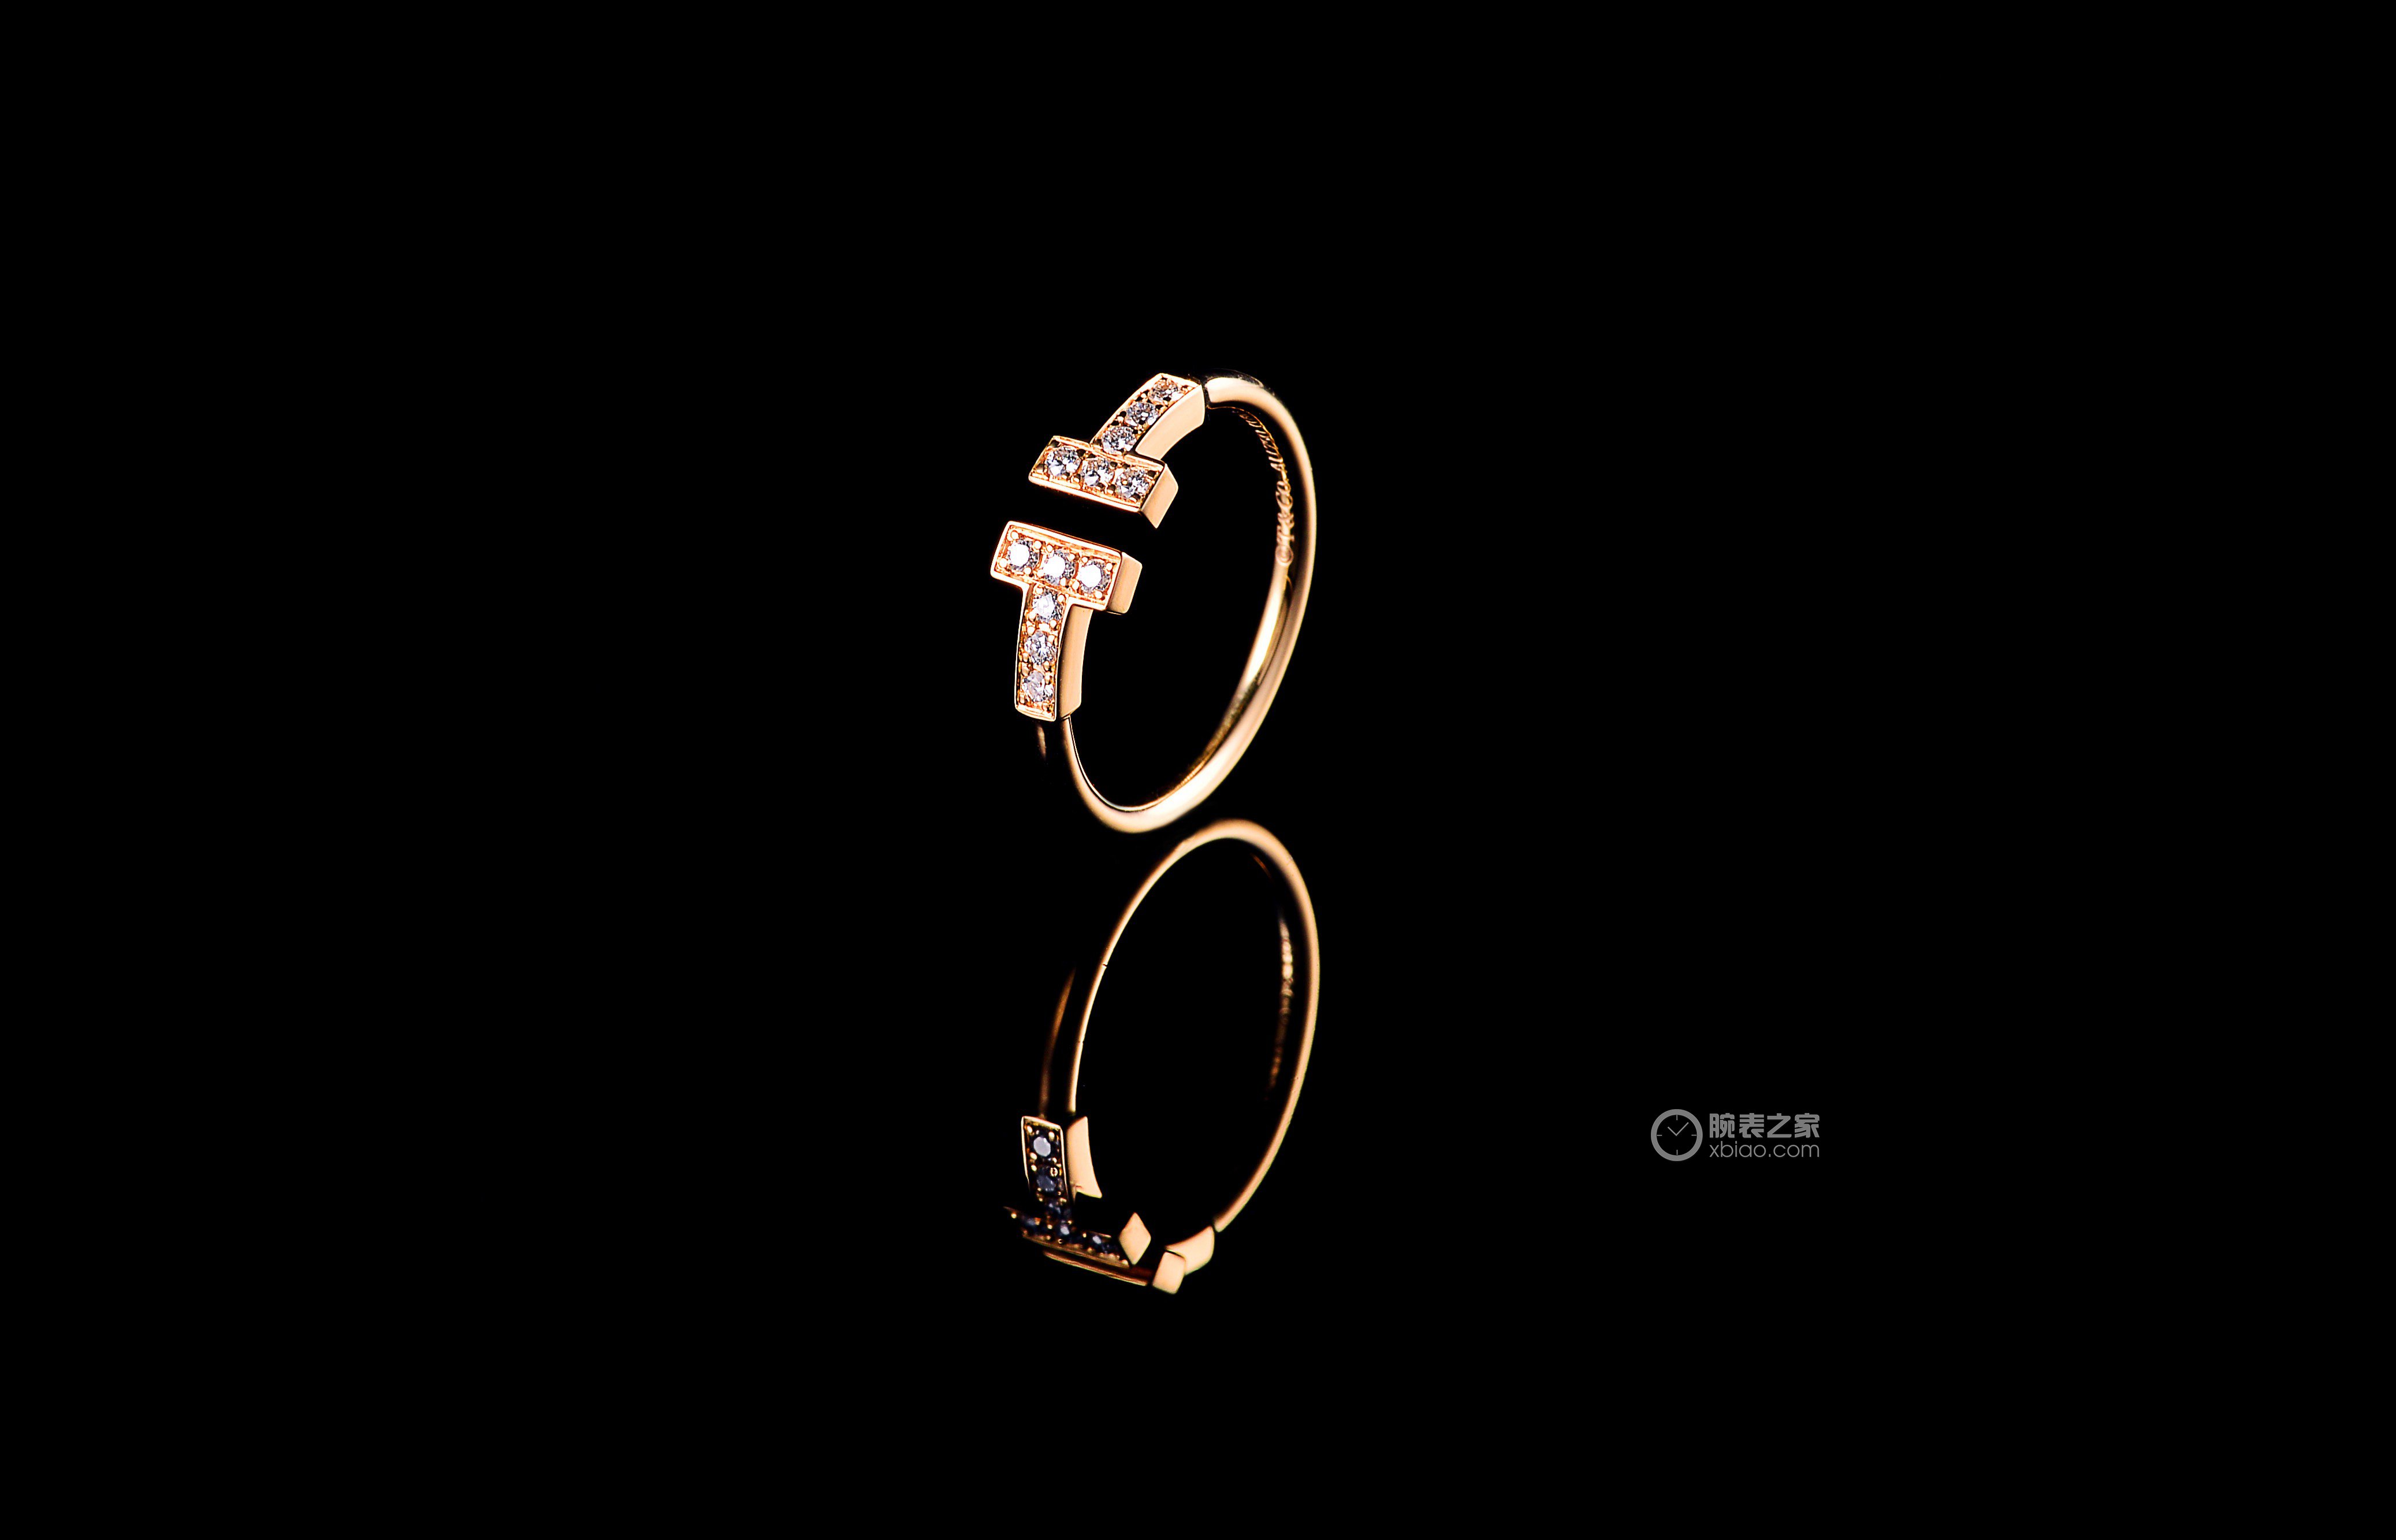 Tiffany & Co. 蒂芙尼 T Two 戒指 | iDaily Jewelry · 每日珠宝杂志